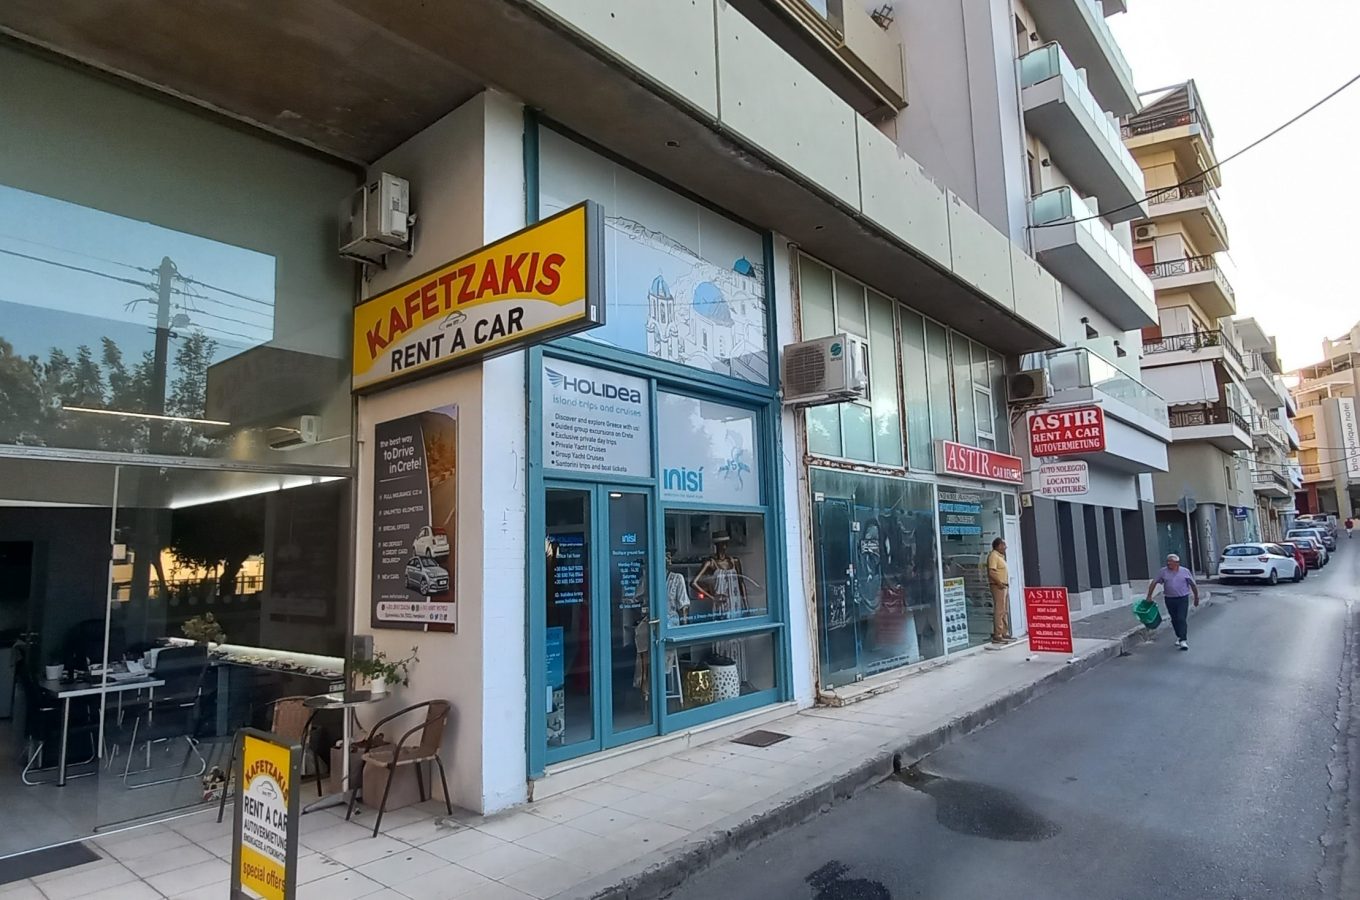 Car Rentals in Crete: Kafetzakis